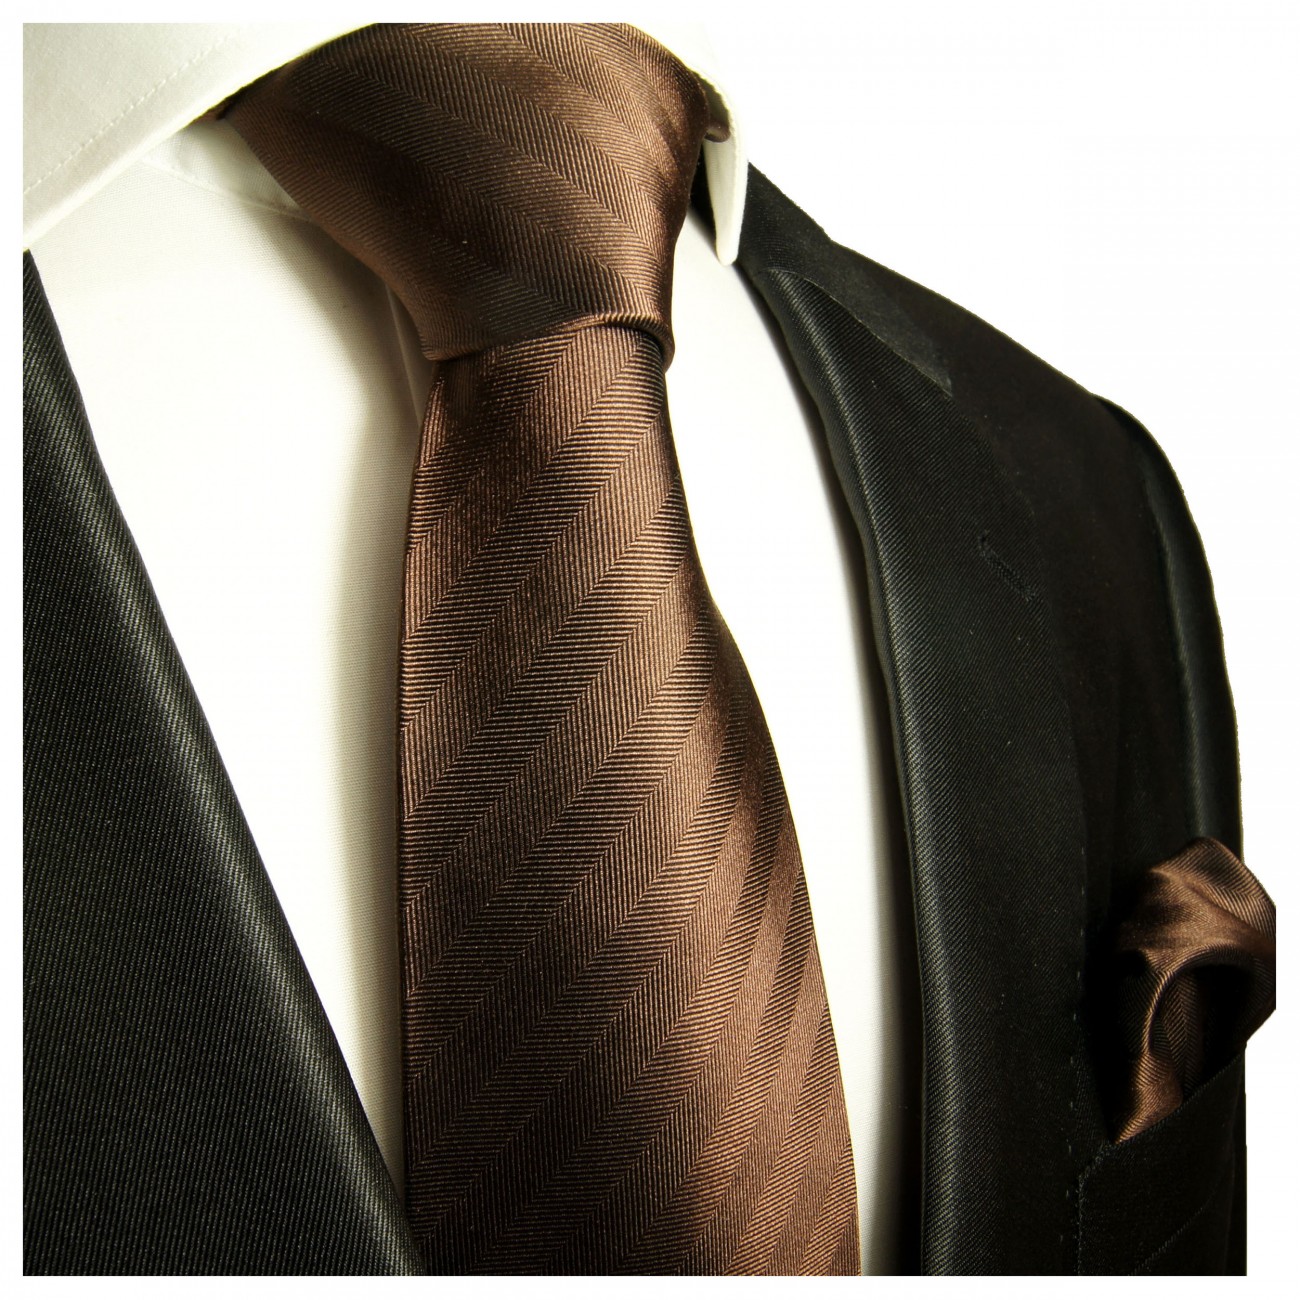 Krawatte braun uni mit Einstecktuch